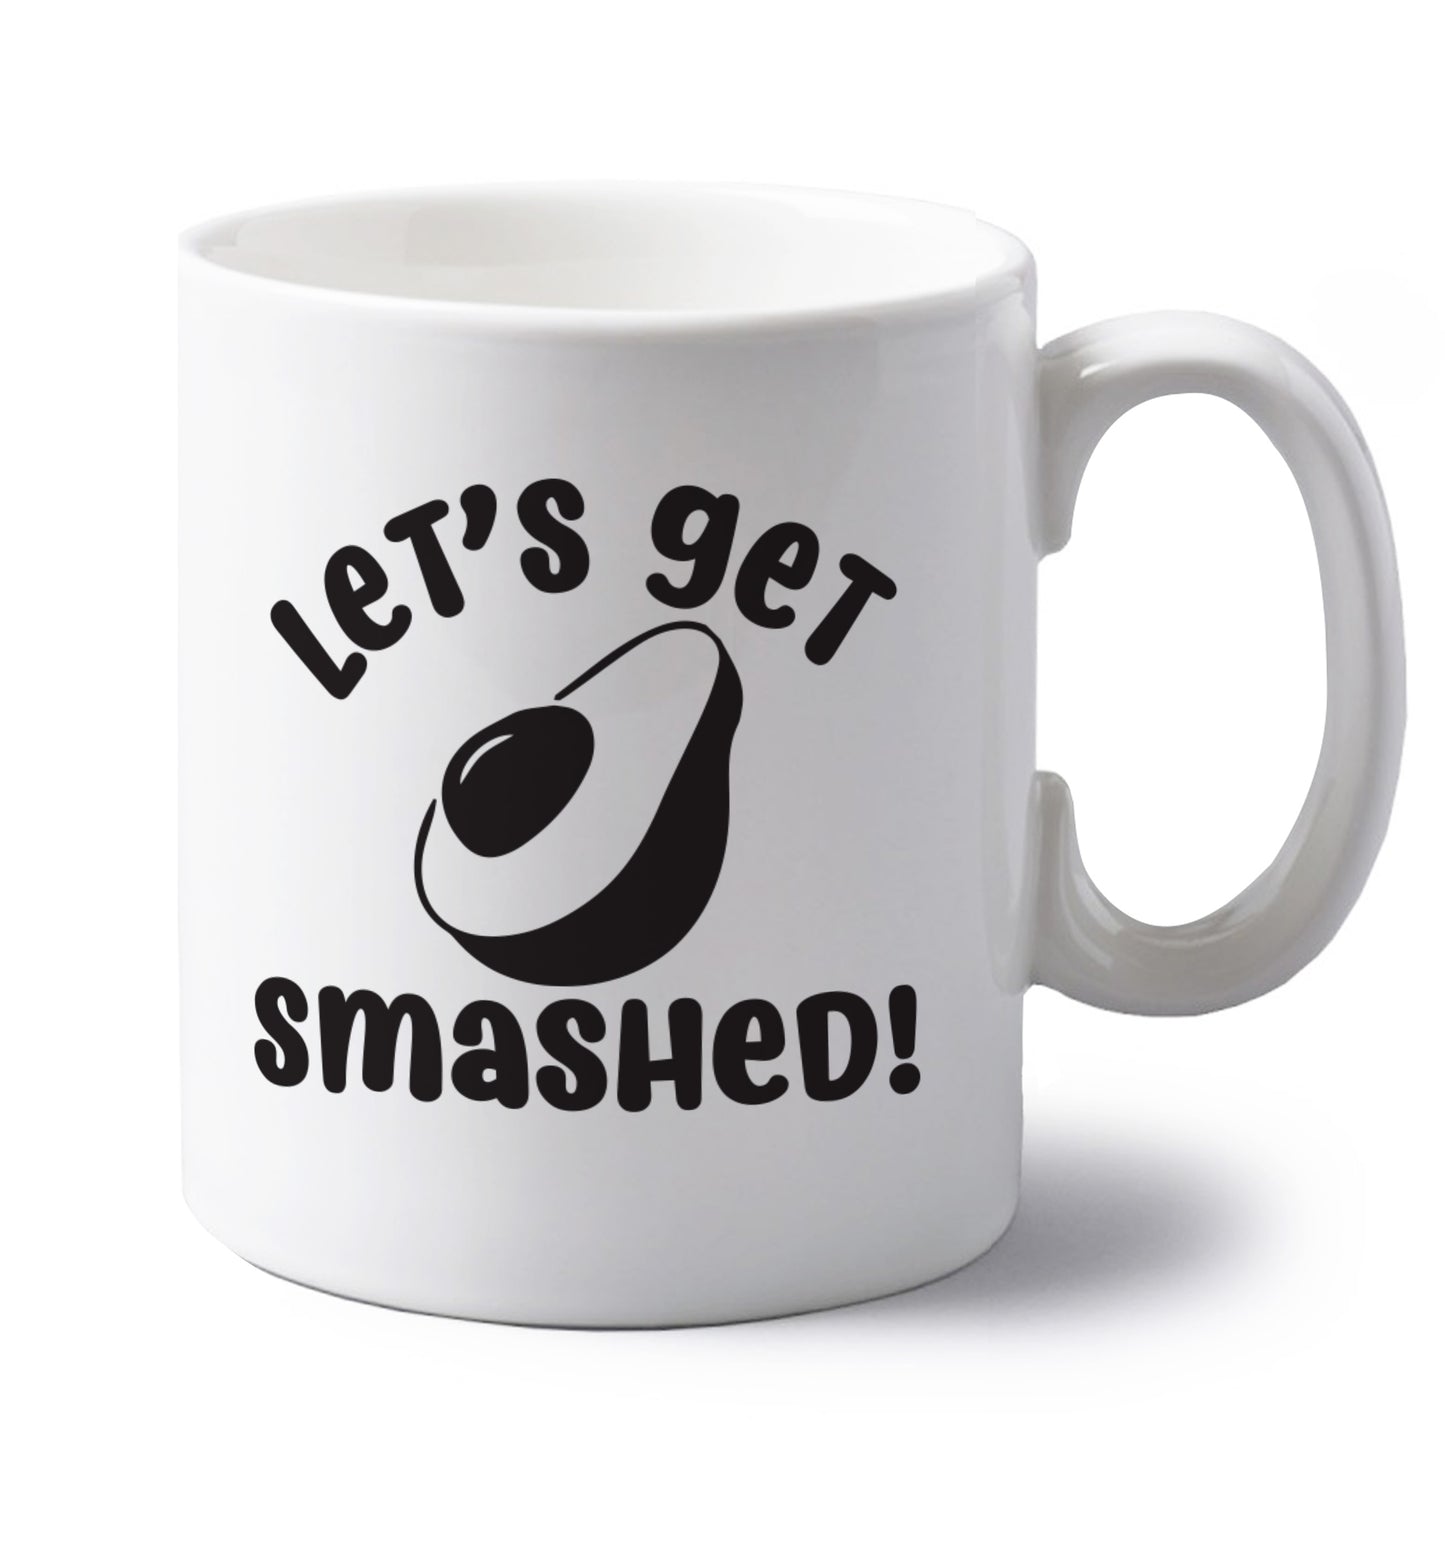 Let's get smashed left handed white ceramic mug 